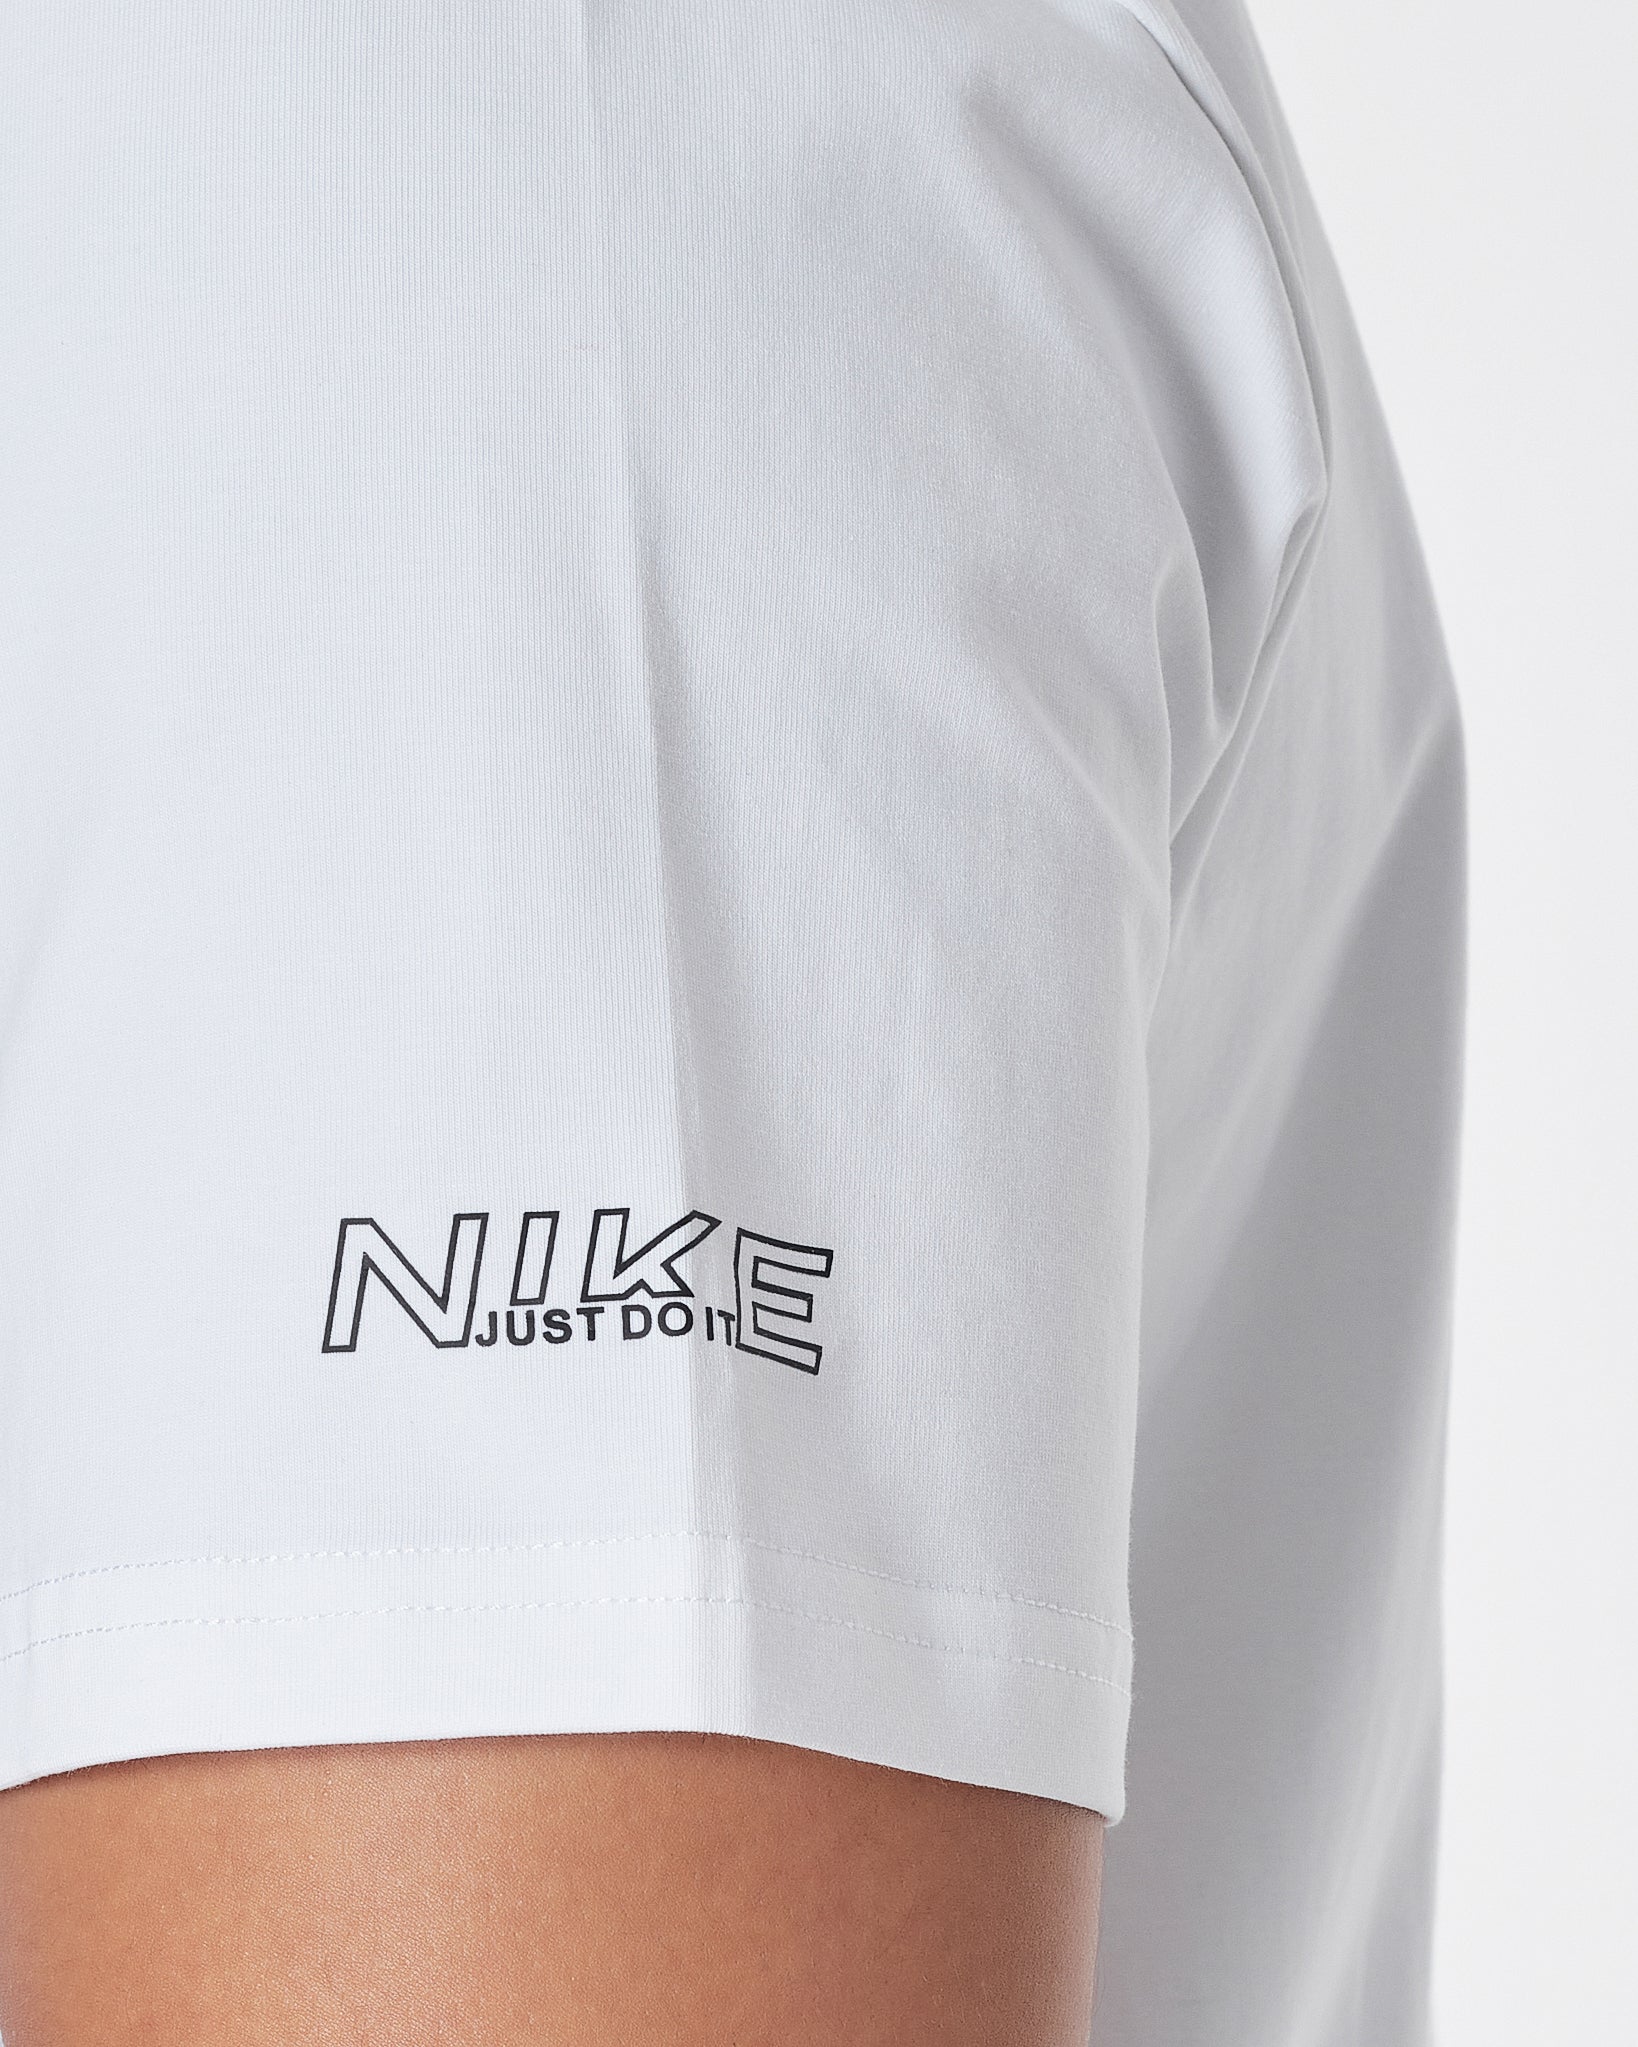 NIK Just Do It Logo Ptinted Men White T-Shirt 13.90